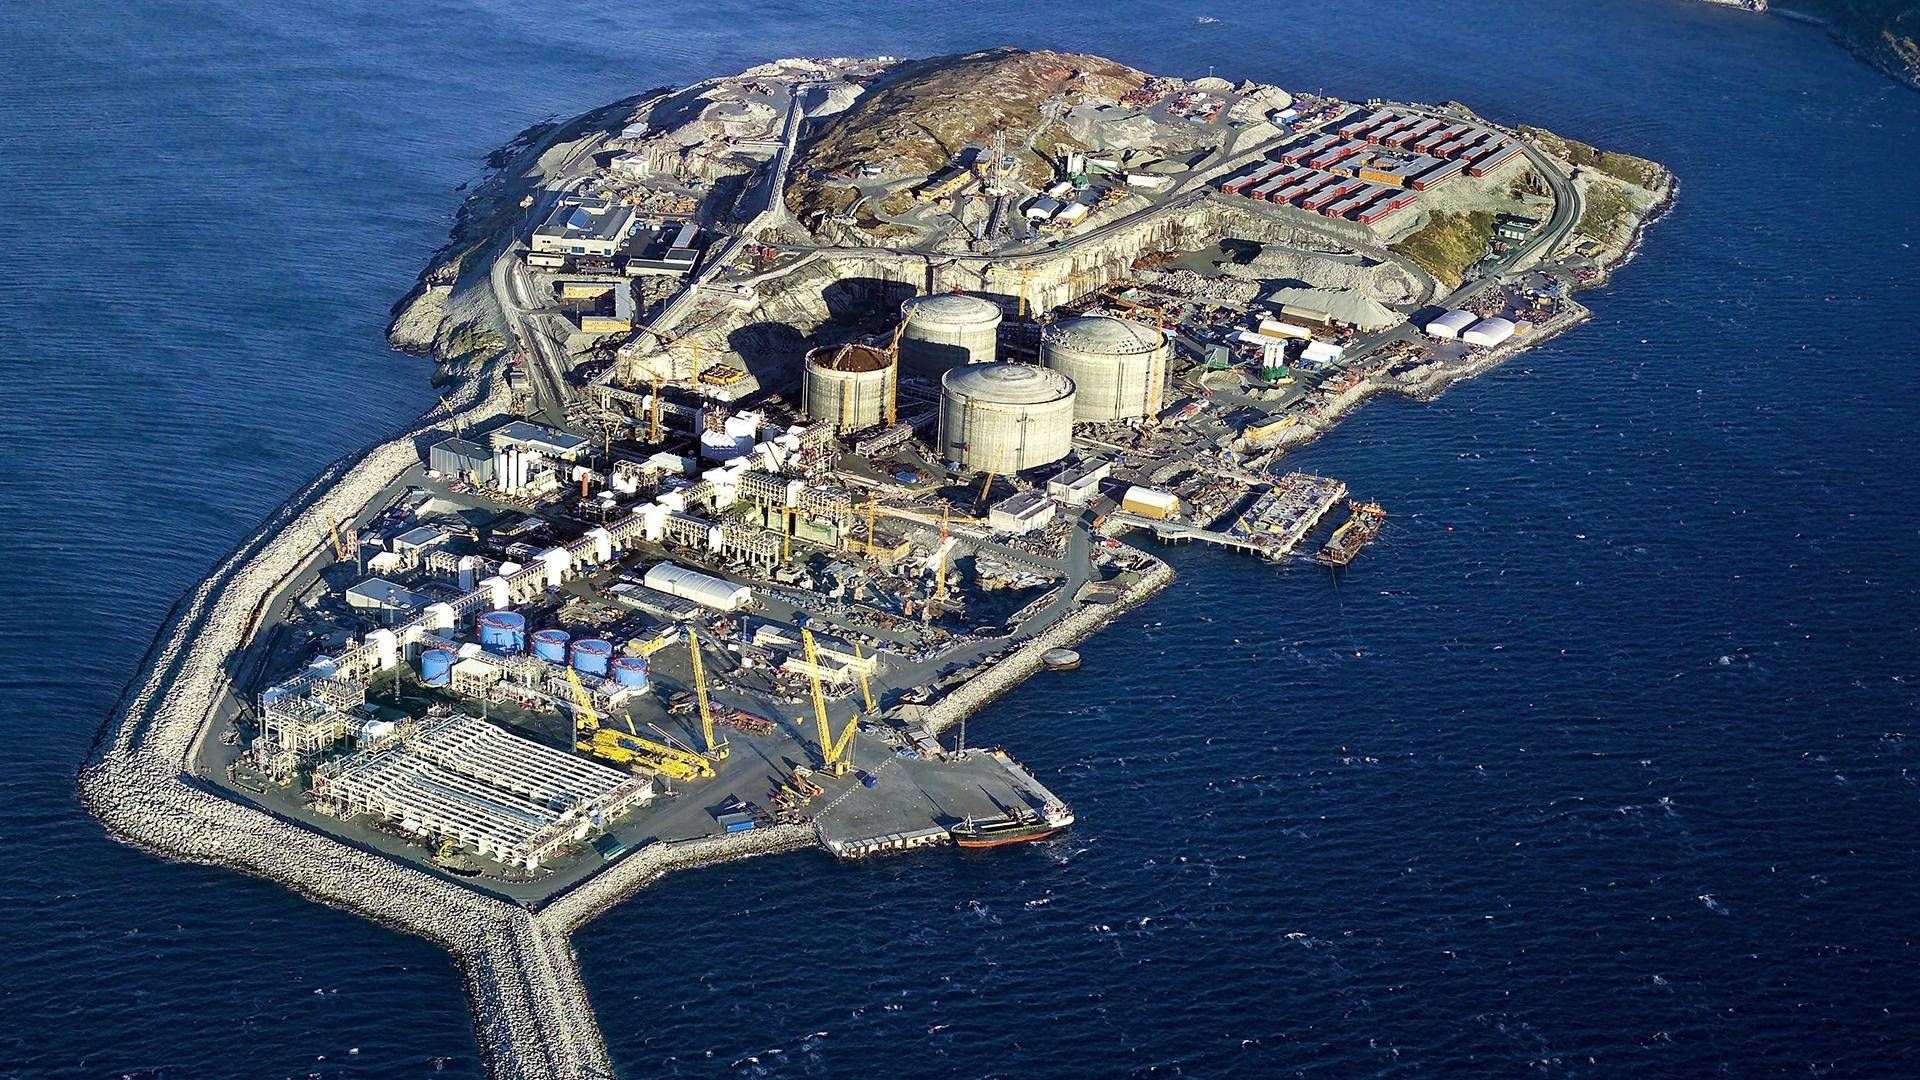 De økonomiske tab ved branden på Melkøya kendes ikke, men alene tabte gasindtægter anslås til 20 milliarder norske kroner. | Foto: Norsk Petroleum